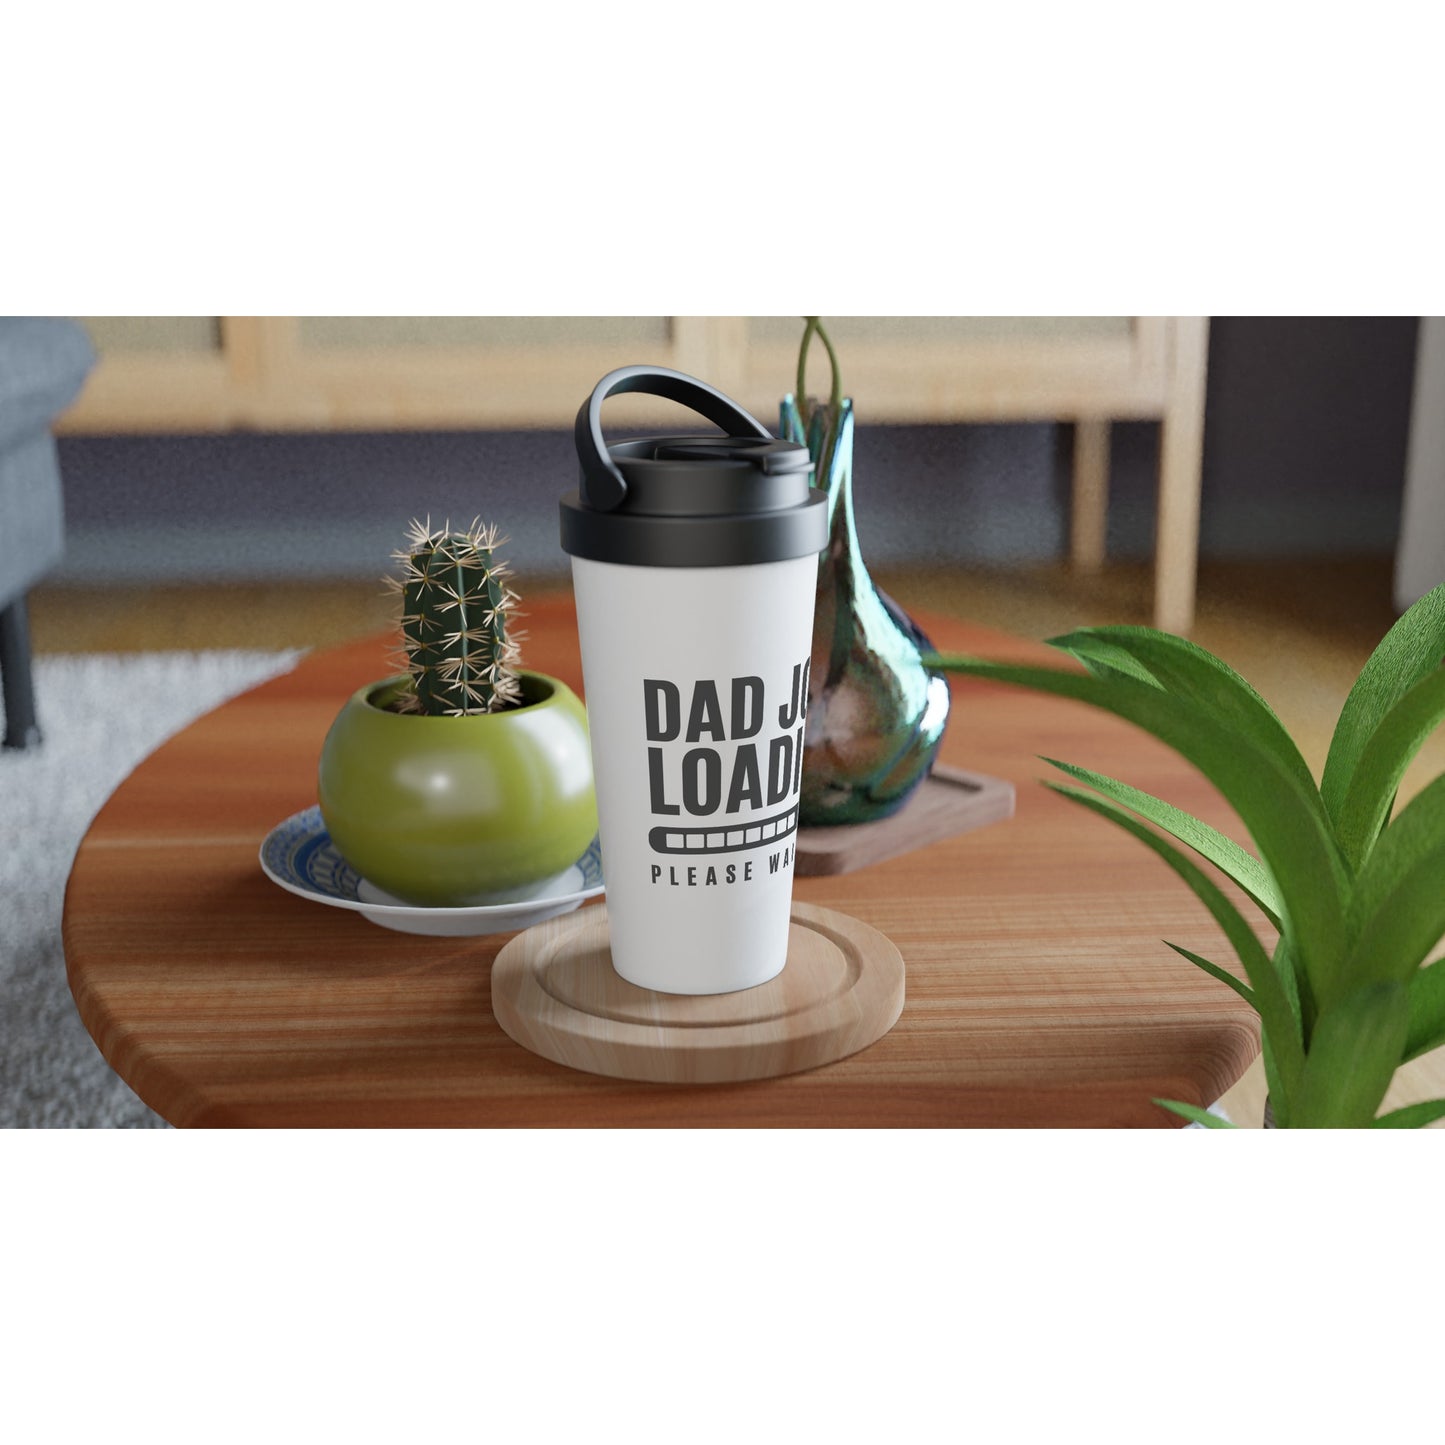 Dad Joke Loading - White 15oz Stainless Steel Travel Mug Travel Mug Dad